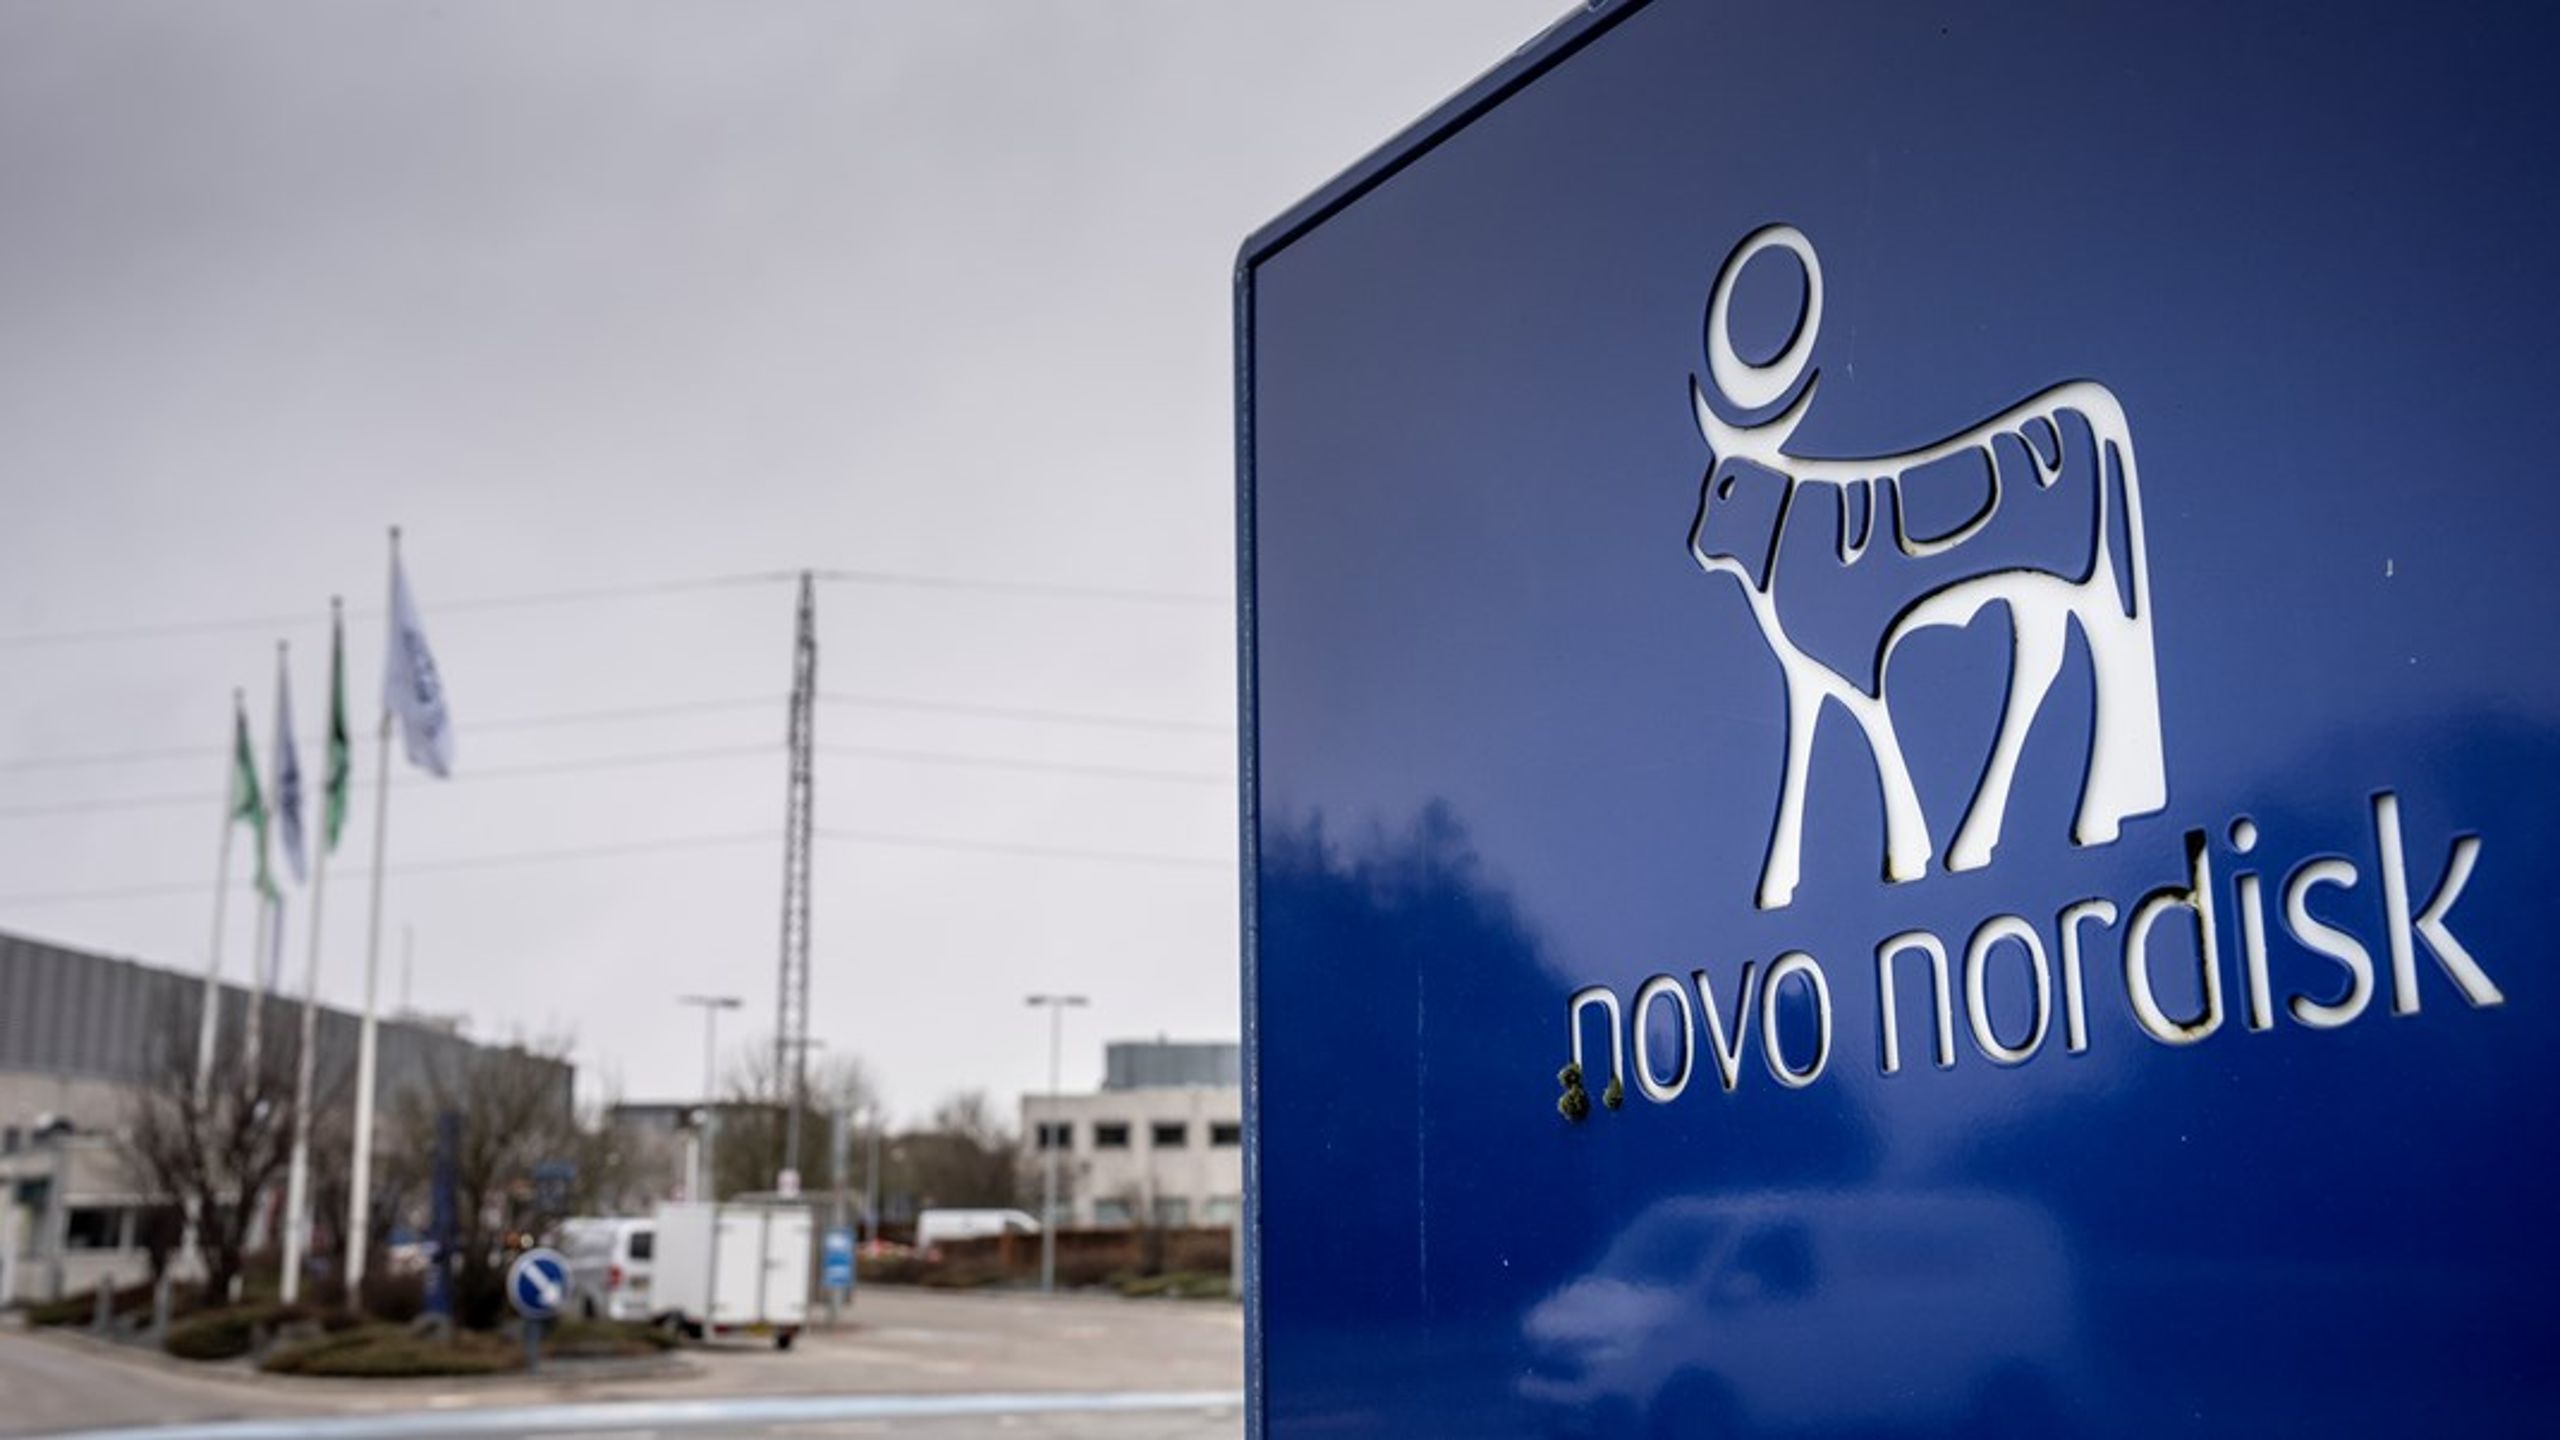 Novo Nordisk er blandt&nbsp;de 230 virksomheder som Medicoindustrien repræsenterer, som brancheorganisation for producenter og distributører af medicinsk udstyr.